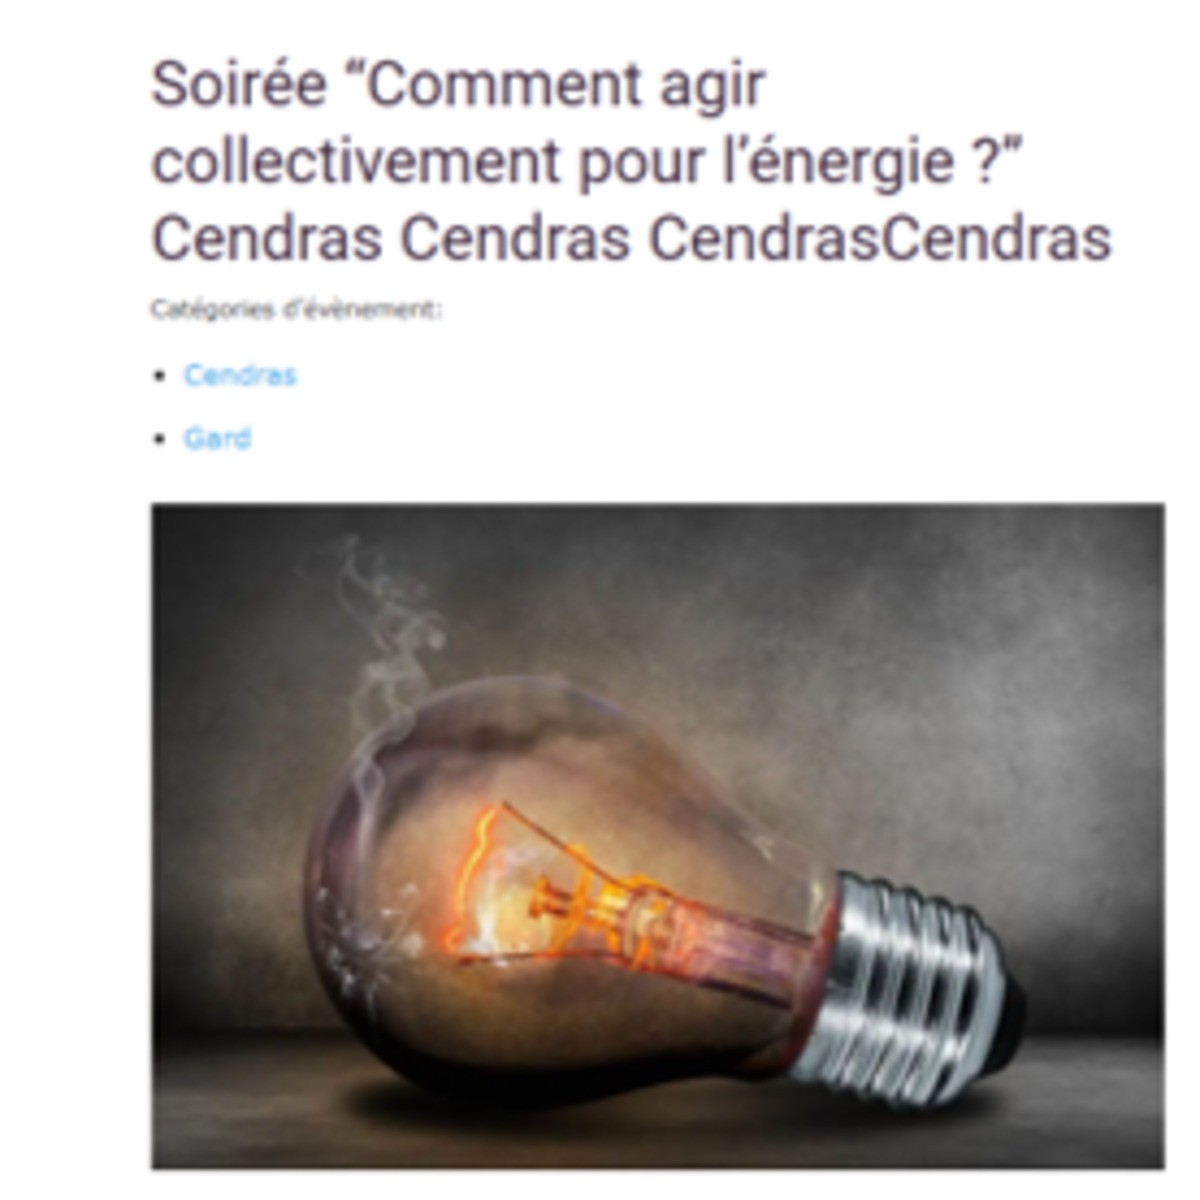 Soirée “Comment agir collectivement pour l’énergie ?” Cendras, 24 janvier 2022